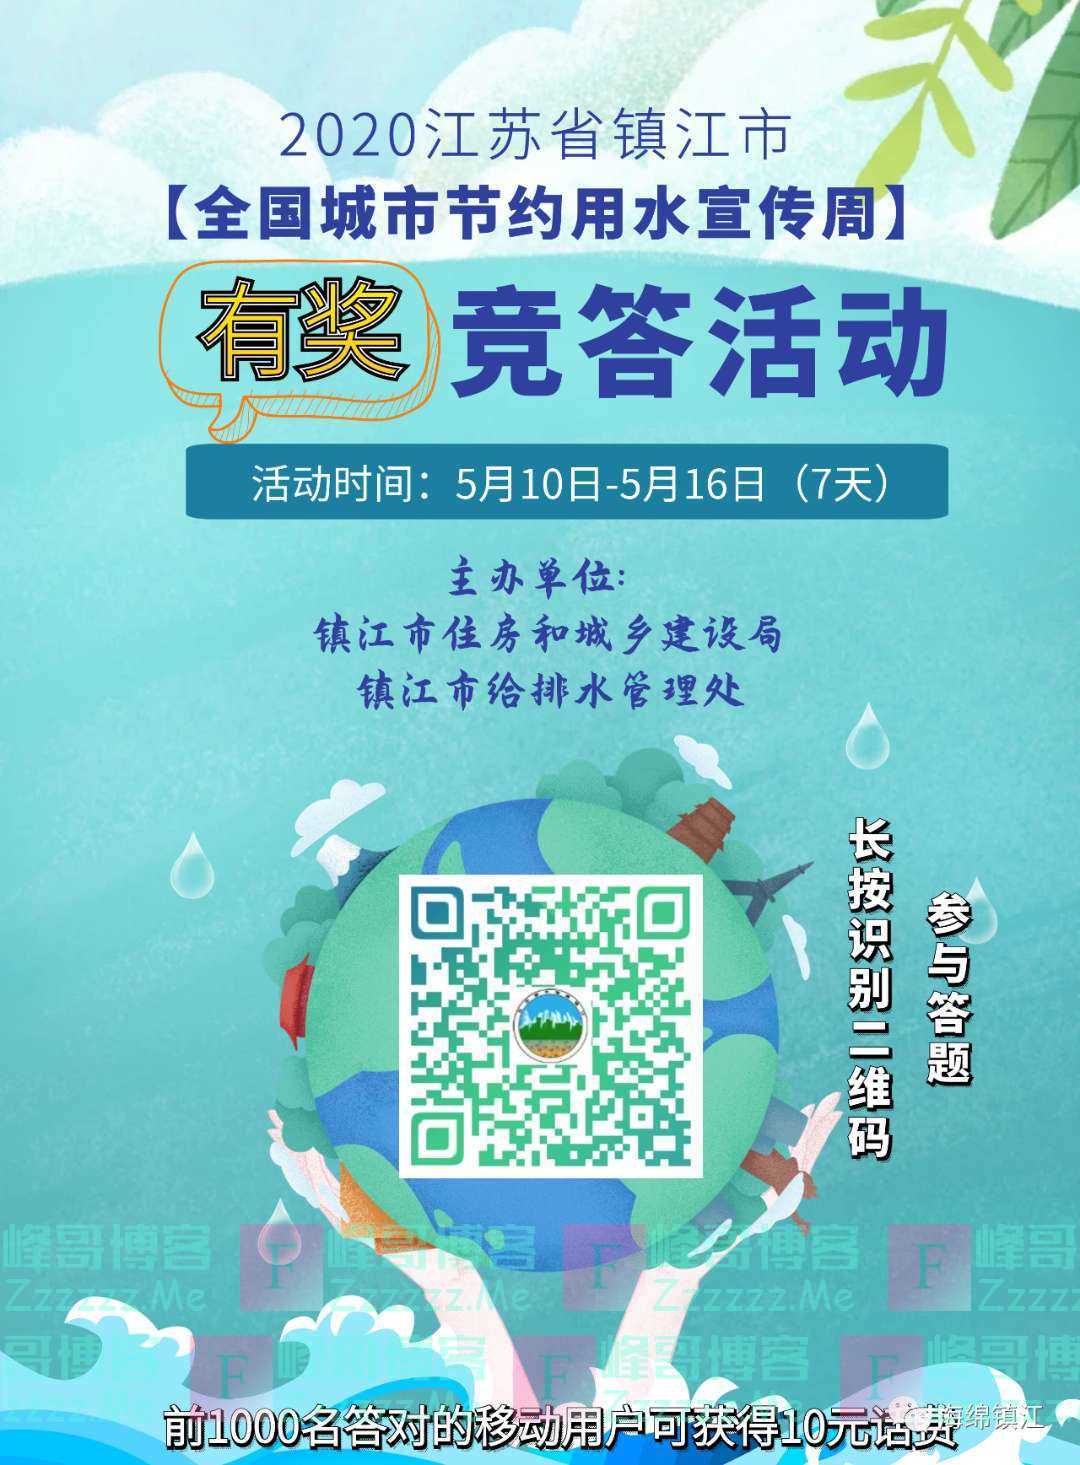 海绵镇江全国城市节约用水宣传周有奖答题（截止不详）